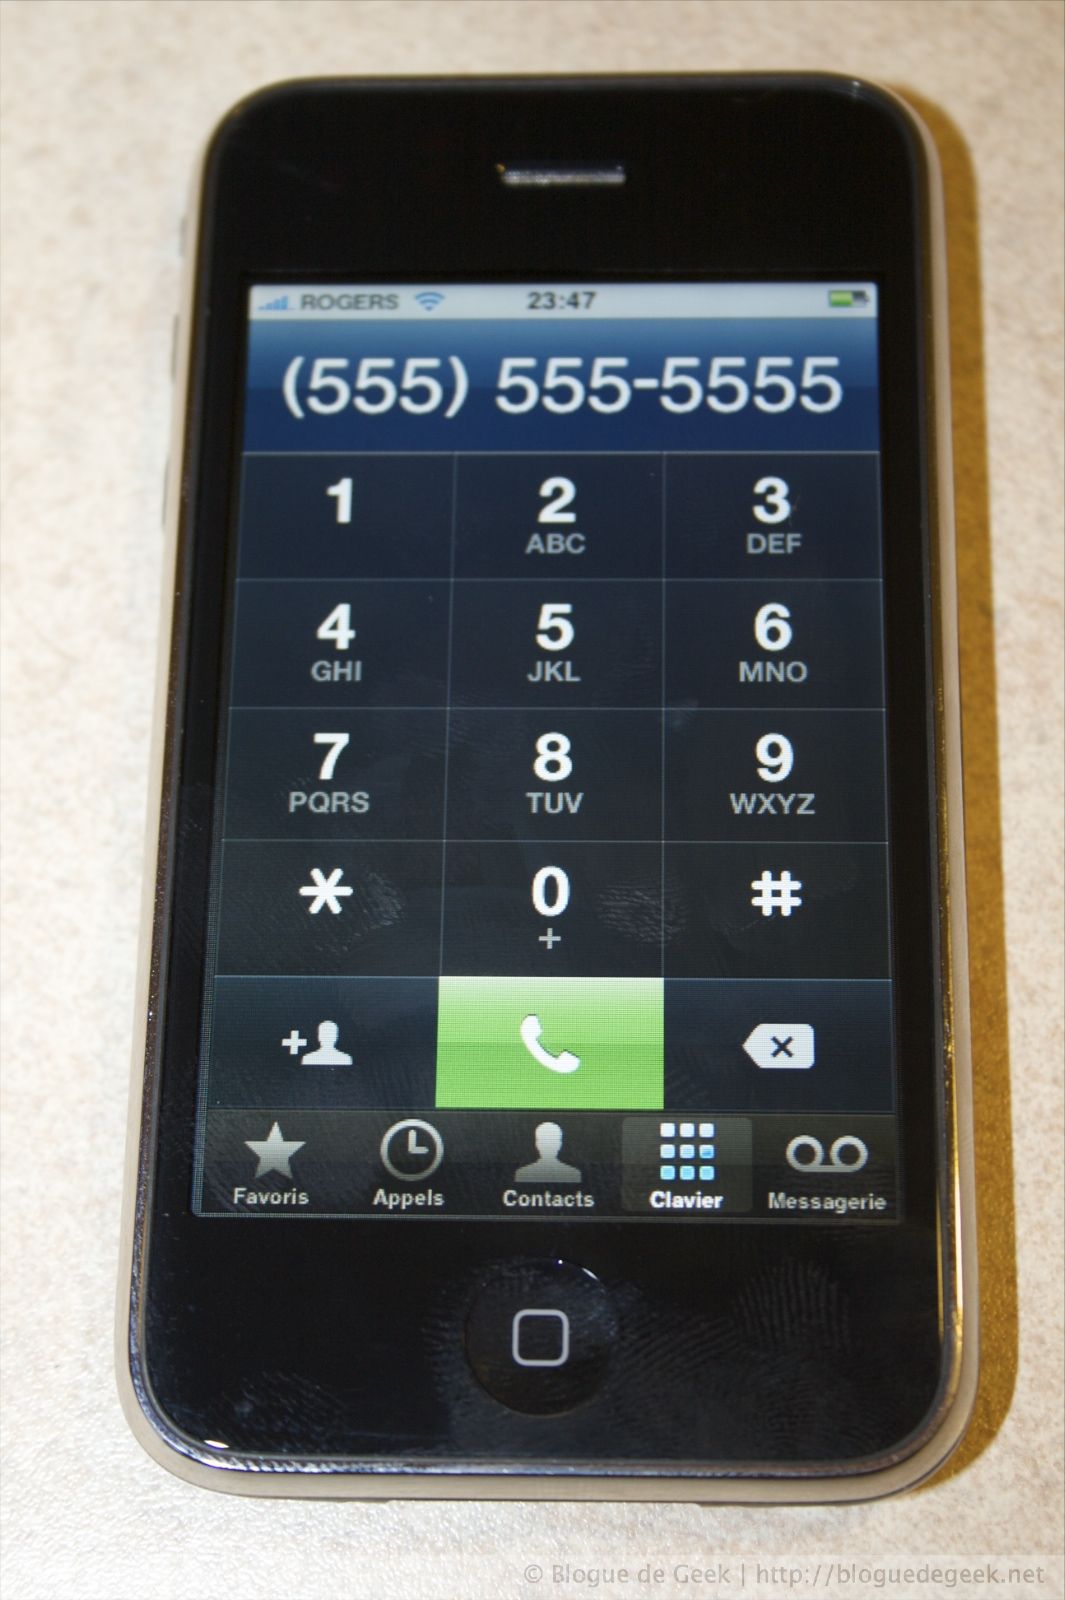 img 263212 - iPhone 3G avec Rogers au Canada [Évaluation] iPhone 3G avec Rogers au Canada [Évaluation]